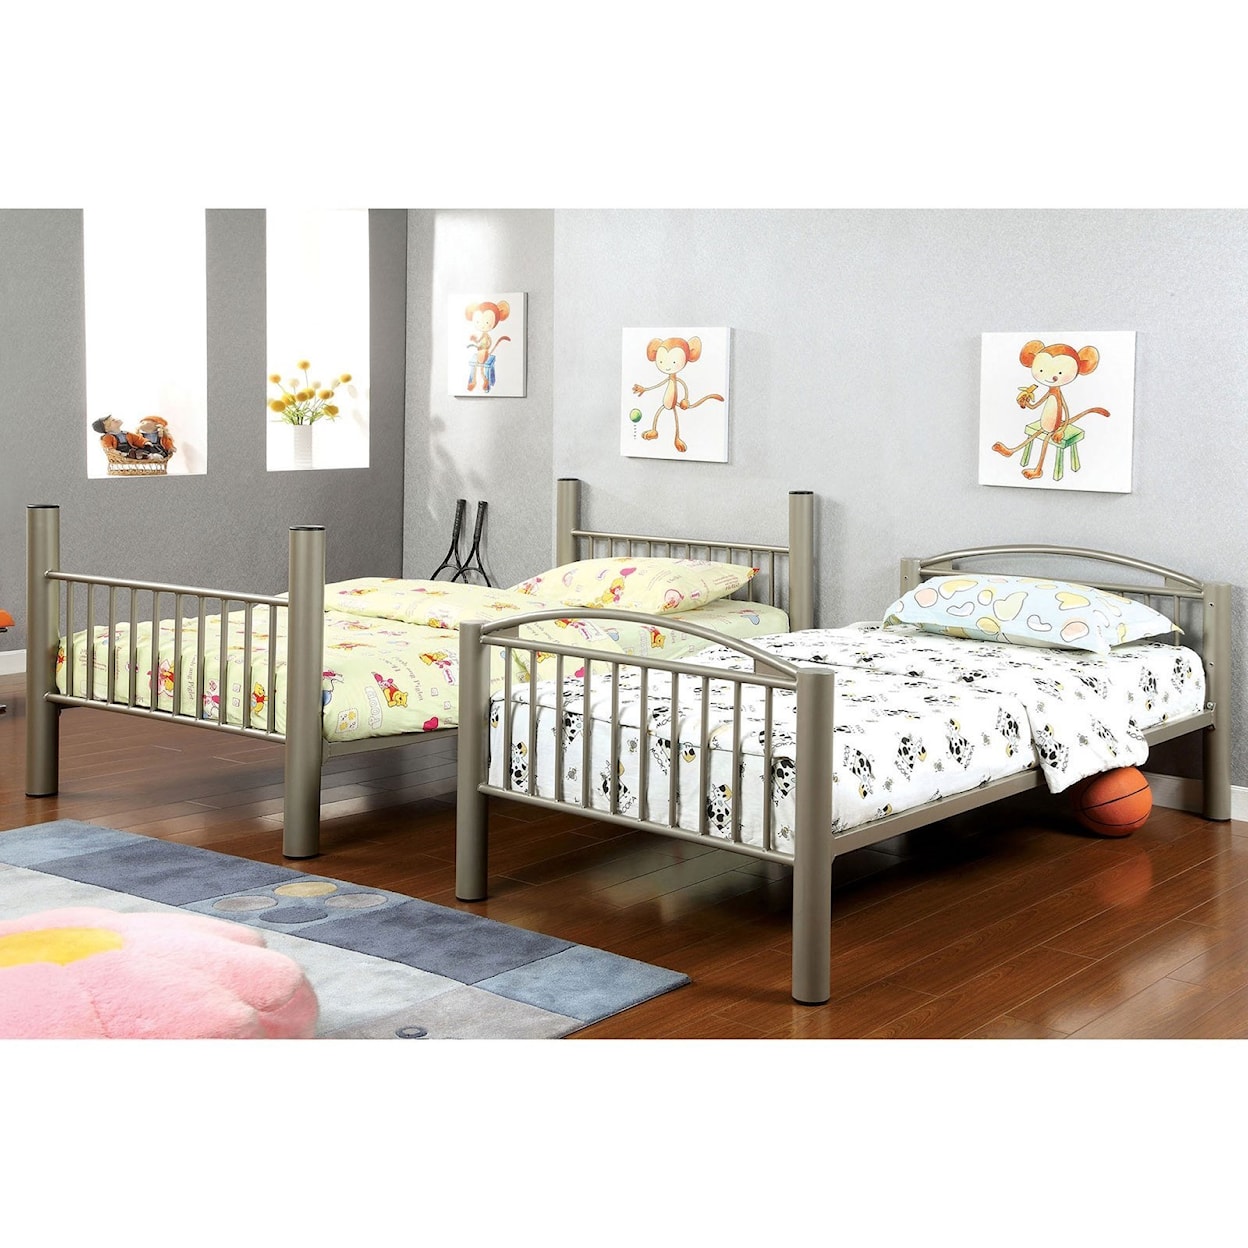 Furniture of America Lovia Twin/Twin Bunk Bed